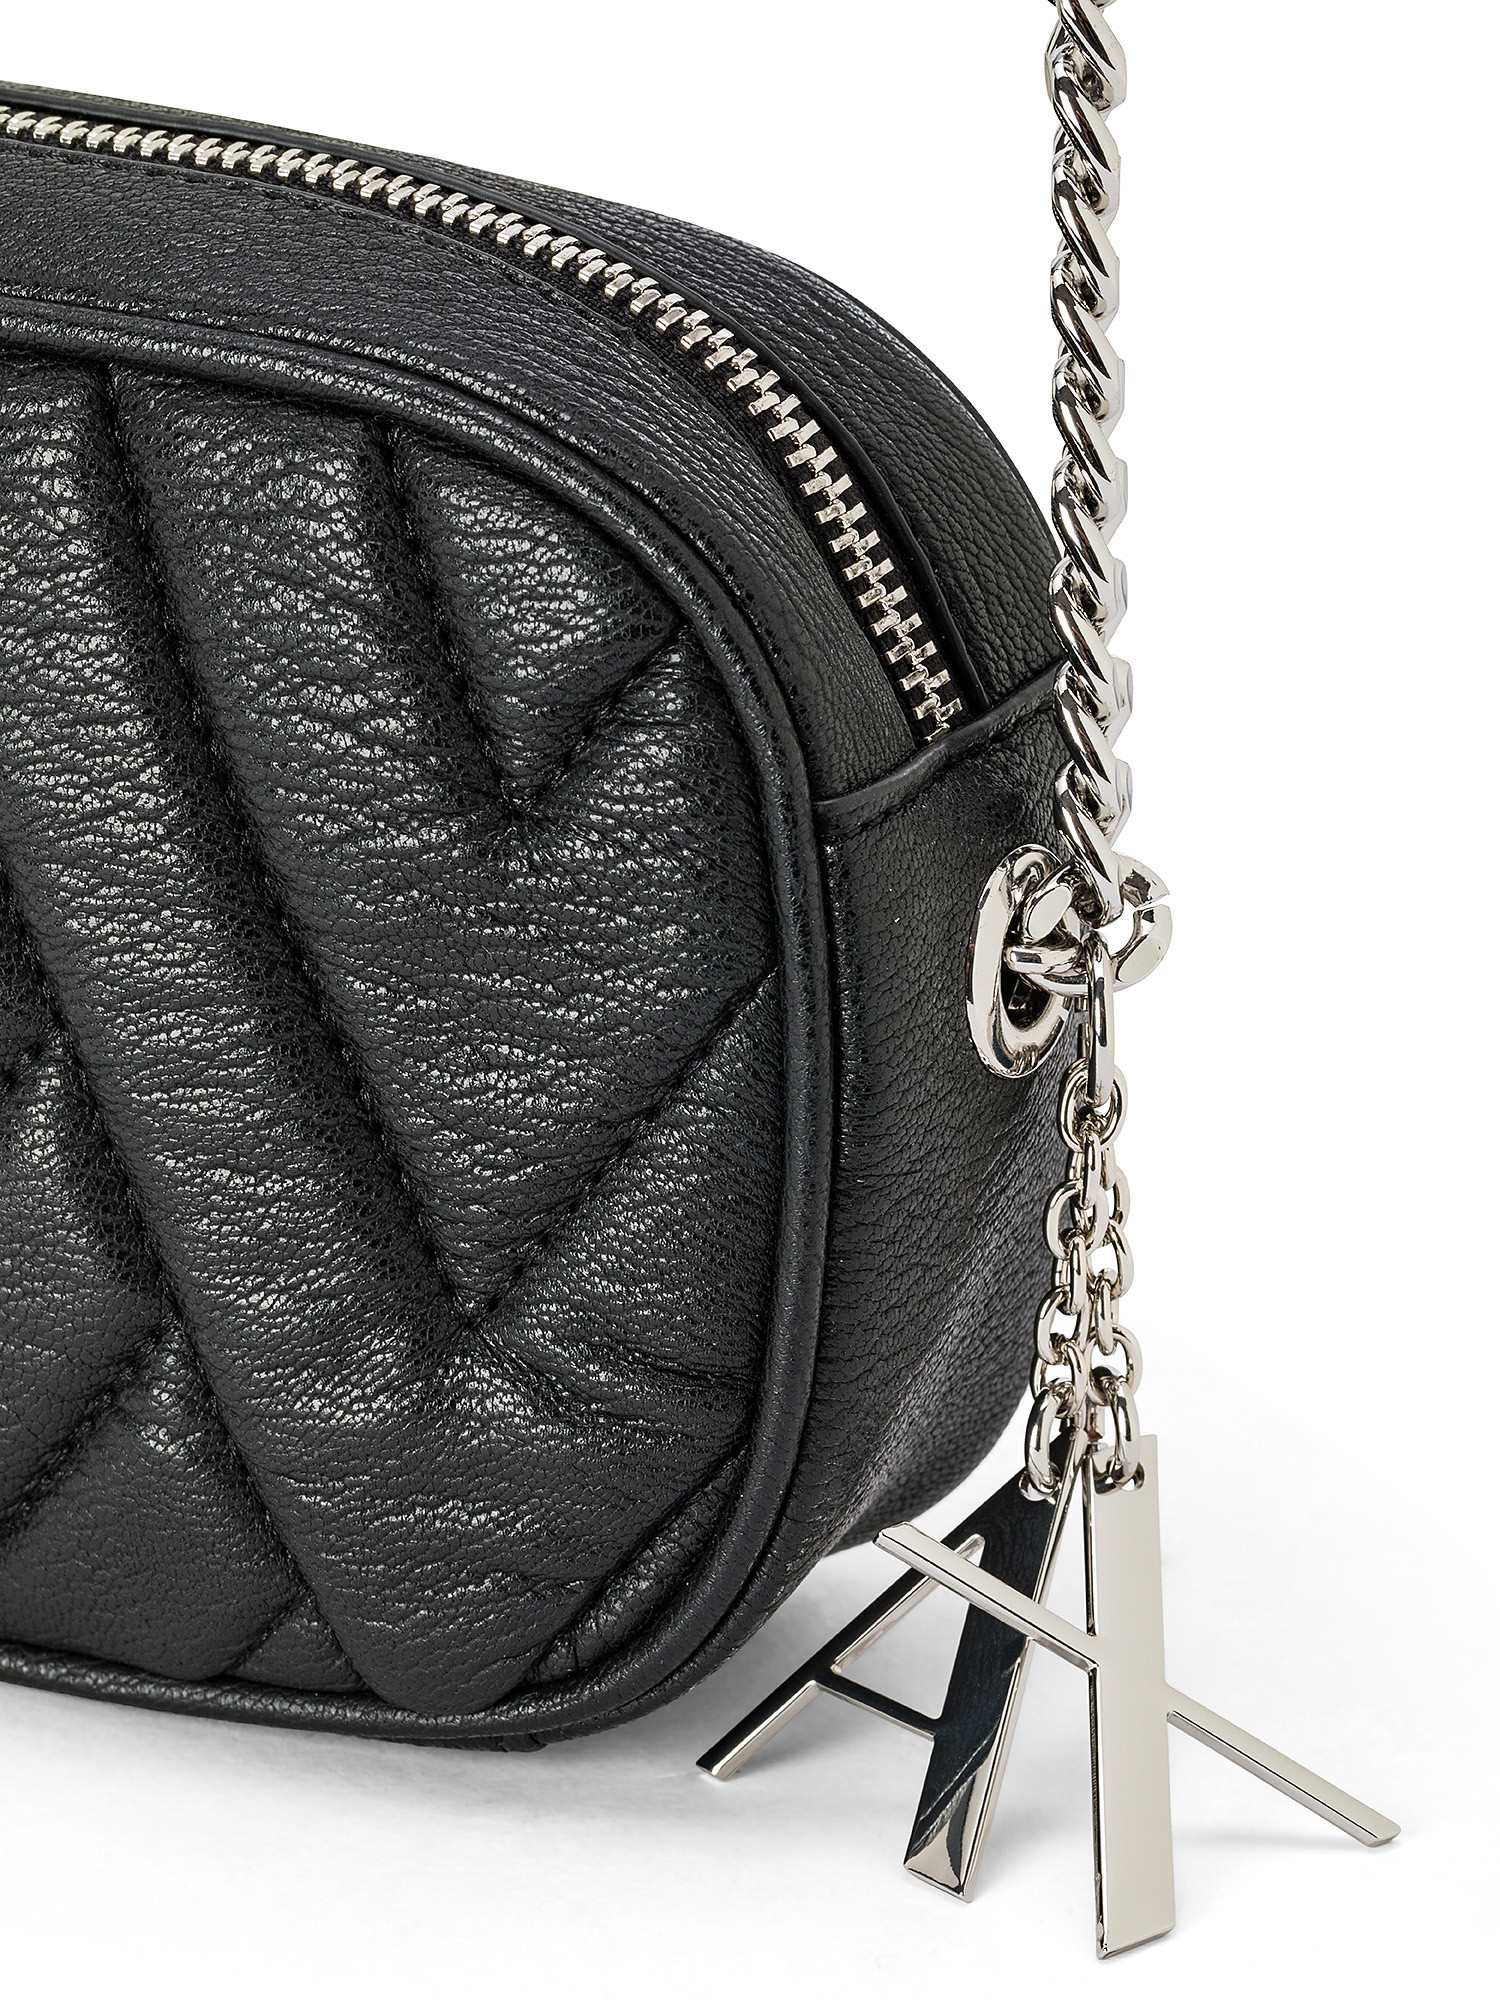 Armani Exchange - Clutch bag with shoulder strap, Black, large image number 2